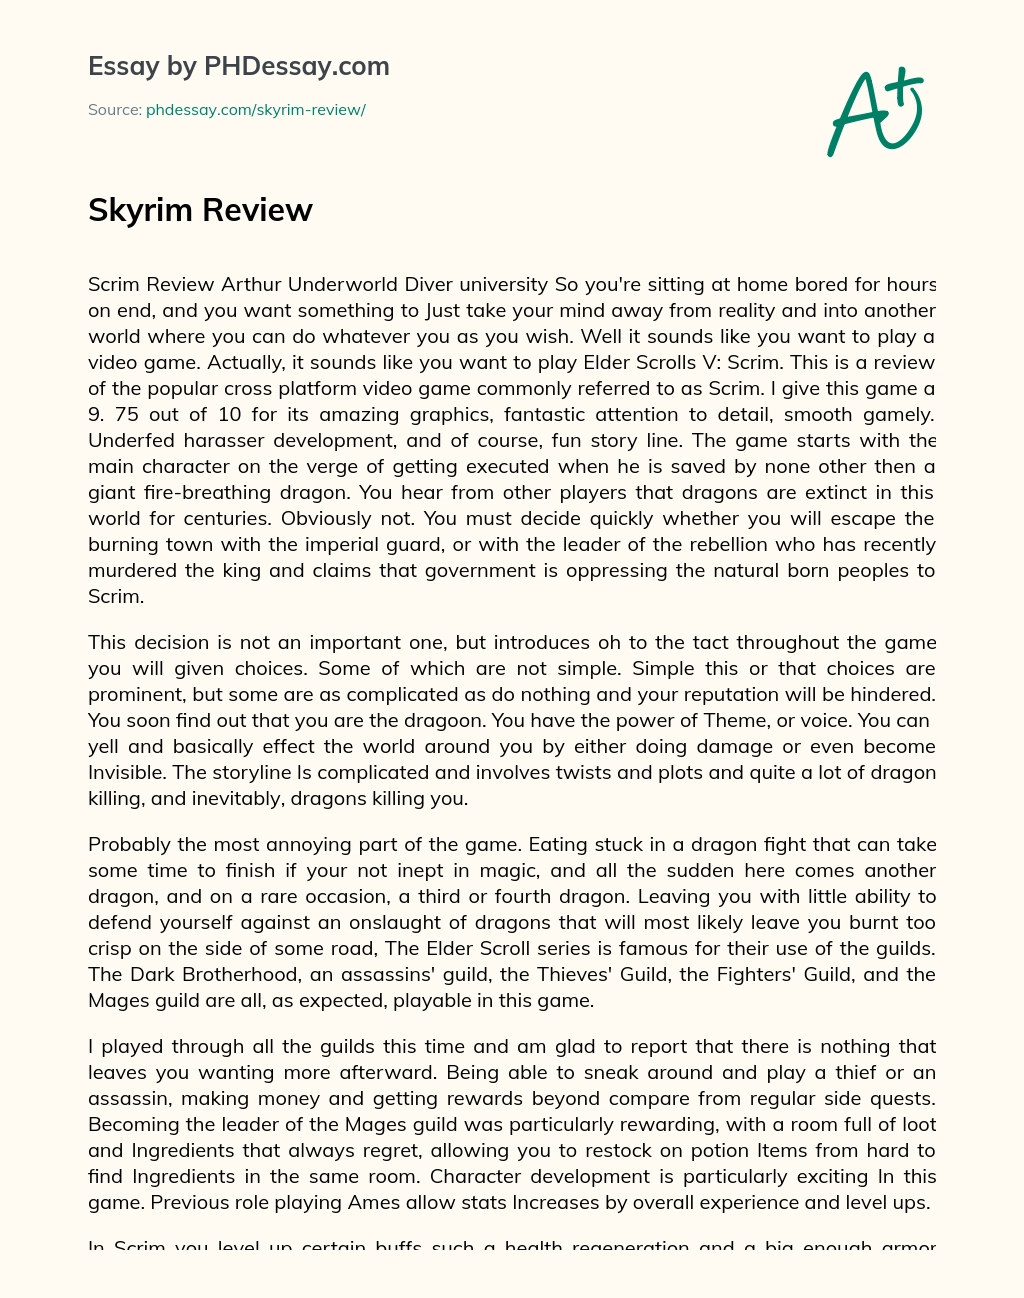 Skyrim Review essay